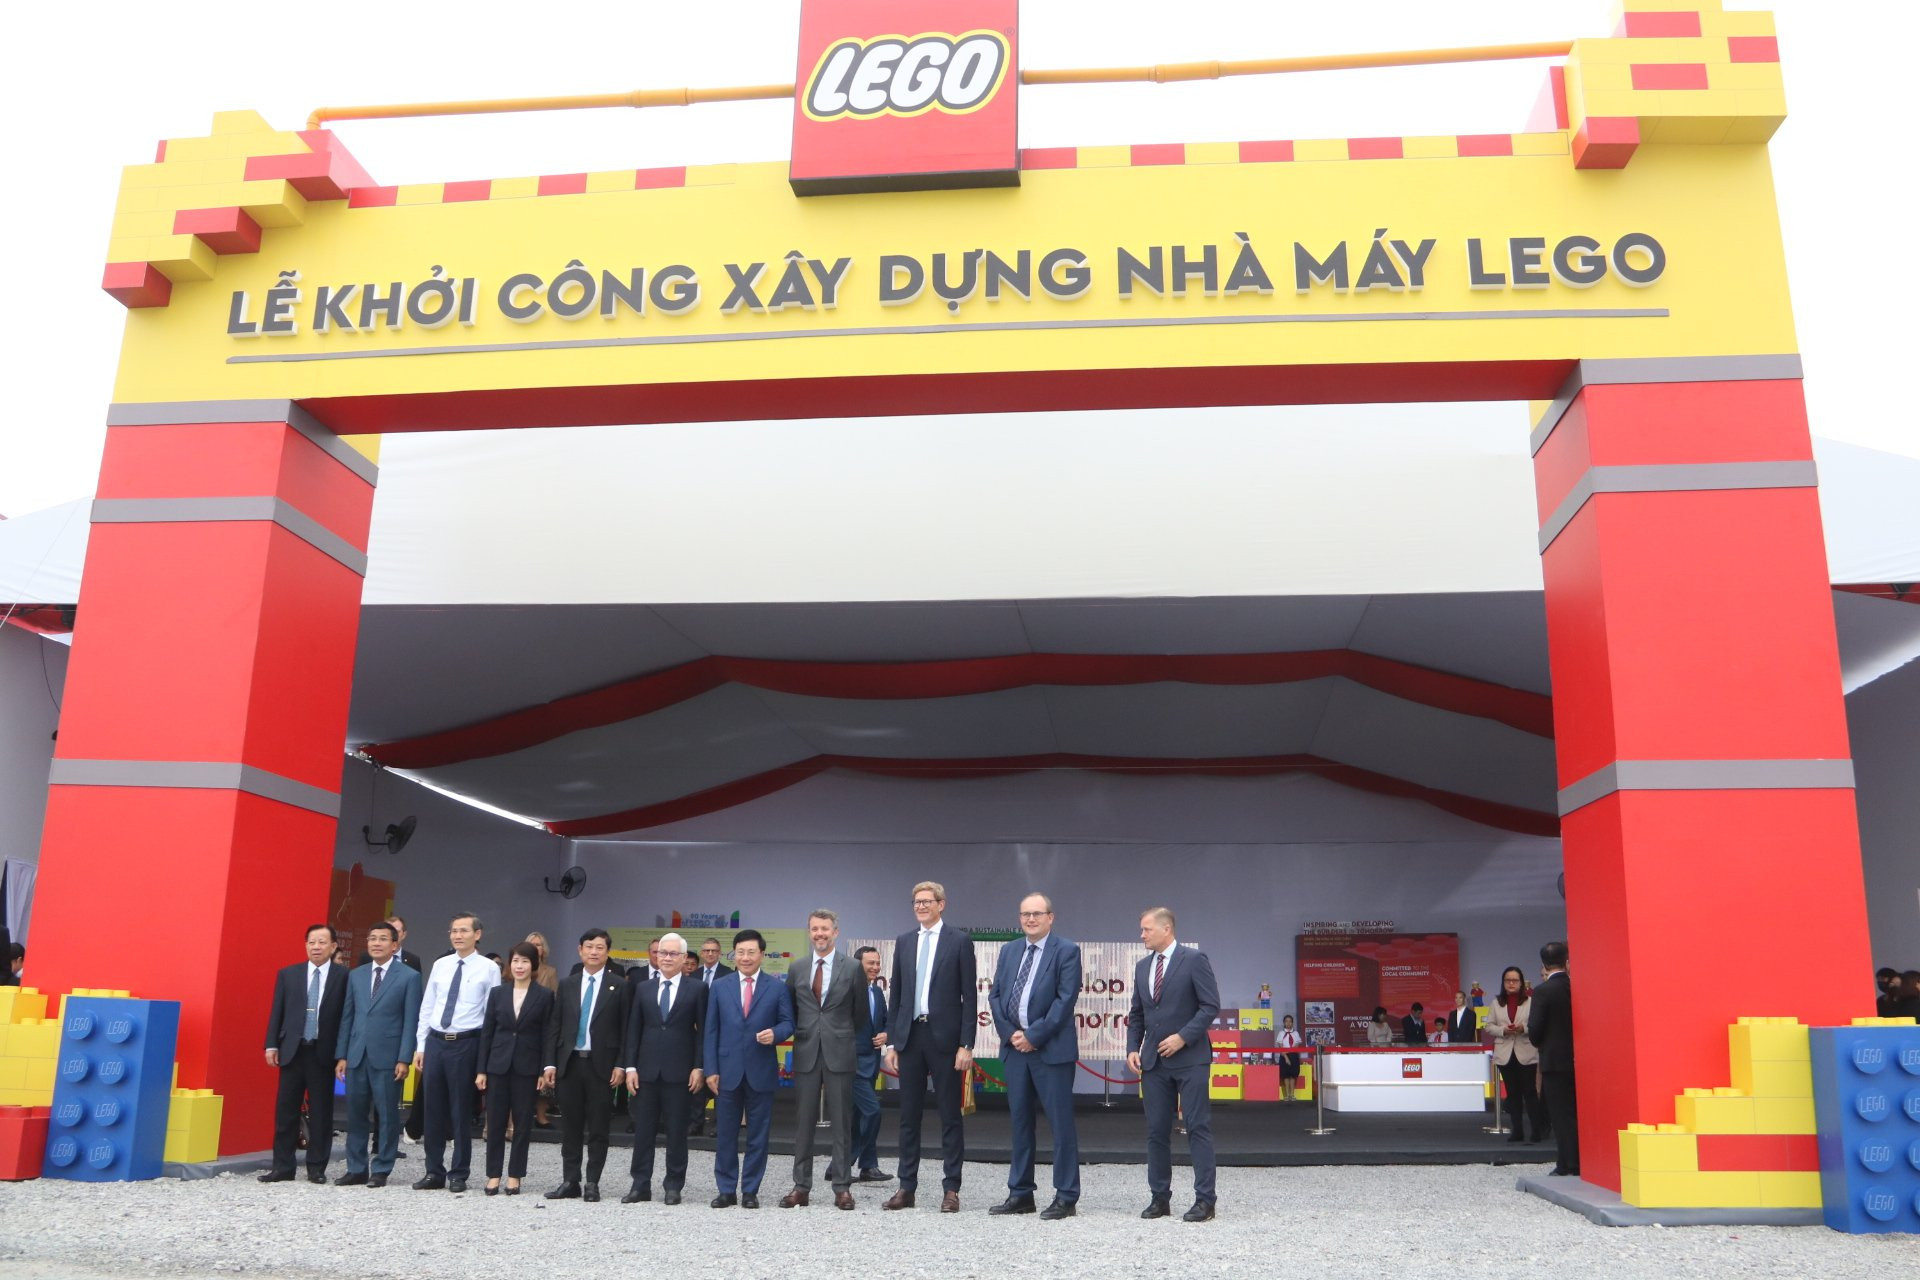 Tập đoàn LEGO khởi công xây dựng nhà máy hơn 1 tỉ USD tại Bình Dương - Becamex